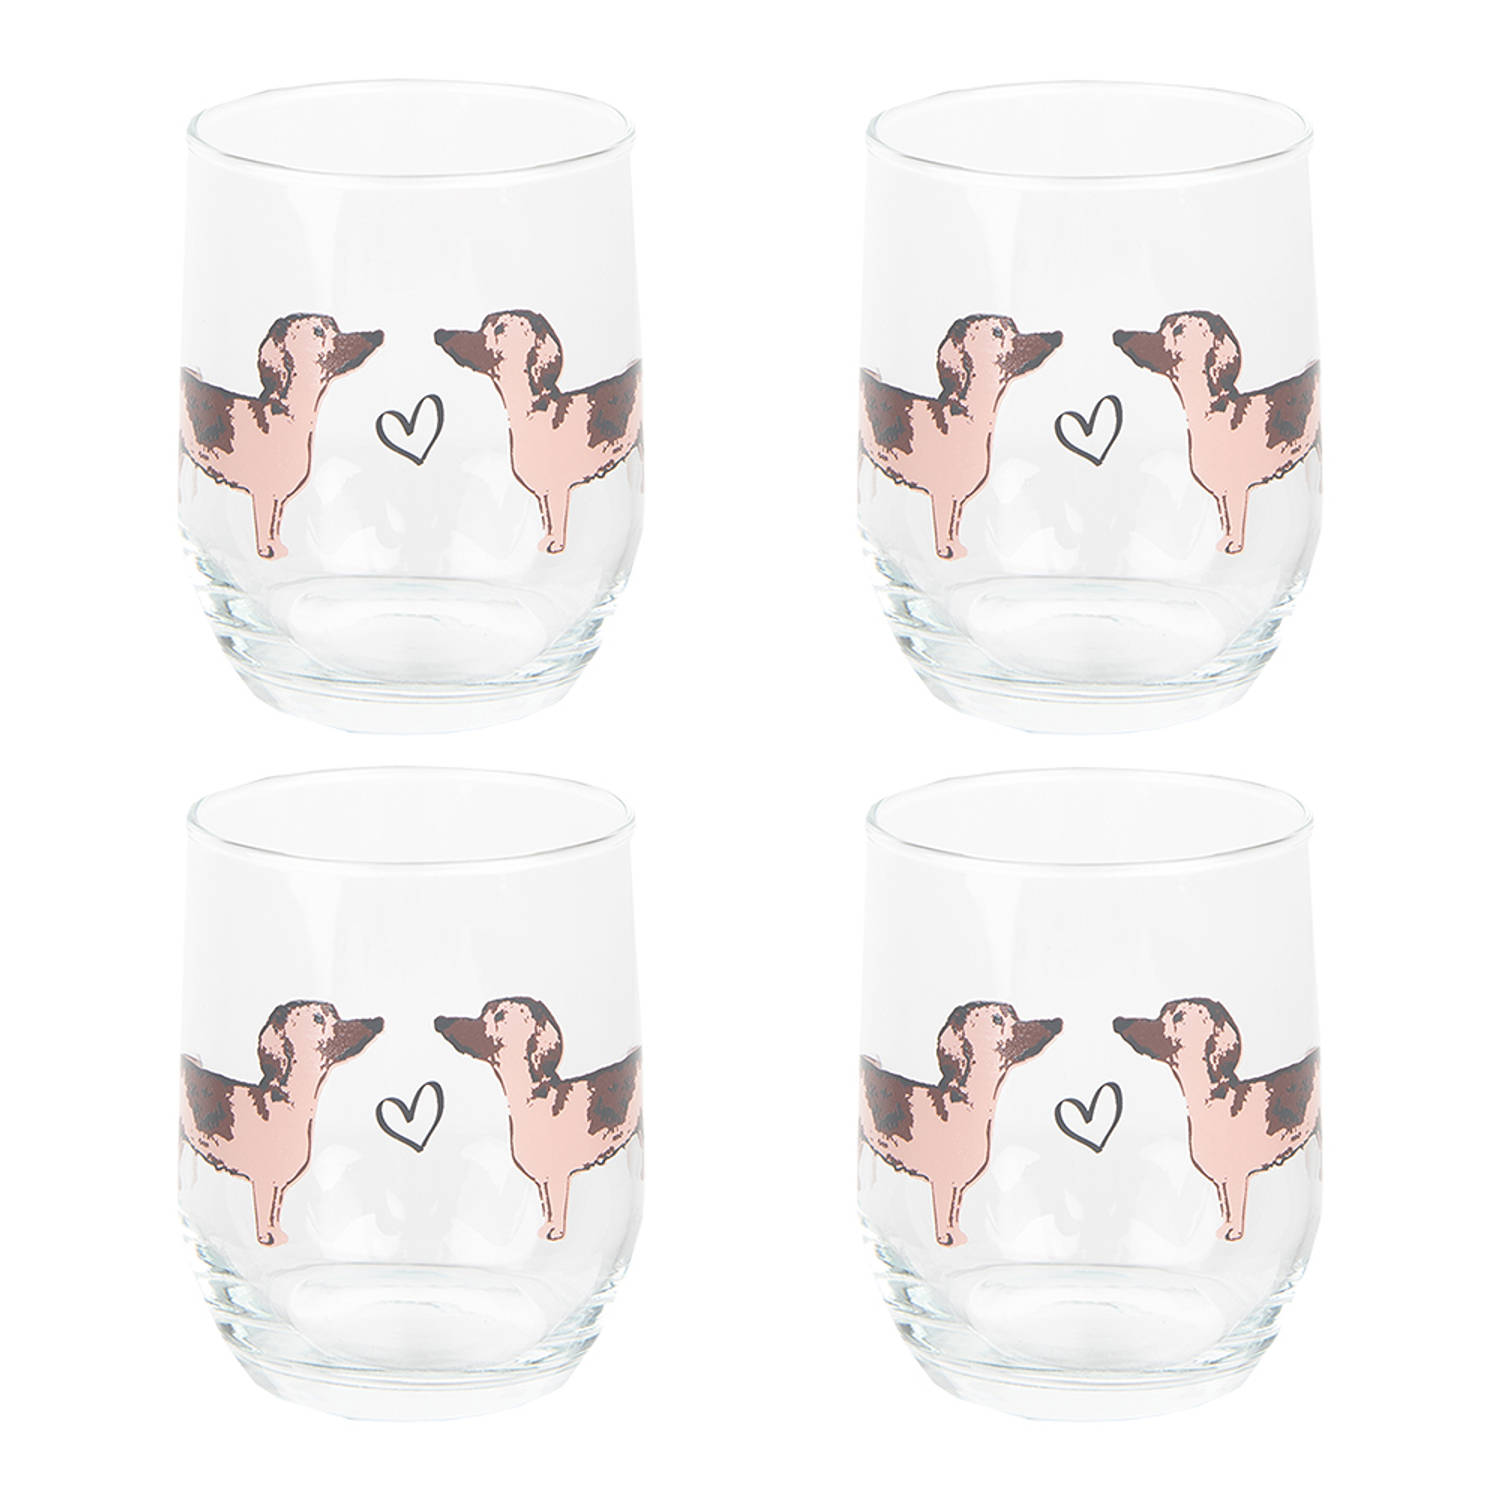 HAES DECO - Waterglas, Drinkglas set van 4 glazen - inhoud glas 260 ml - formaat glas Ø 8x9 cm - Collectie: Dachshund Love - Waterglazen, Drinkglazen